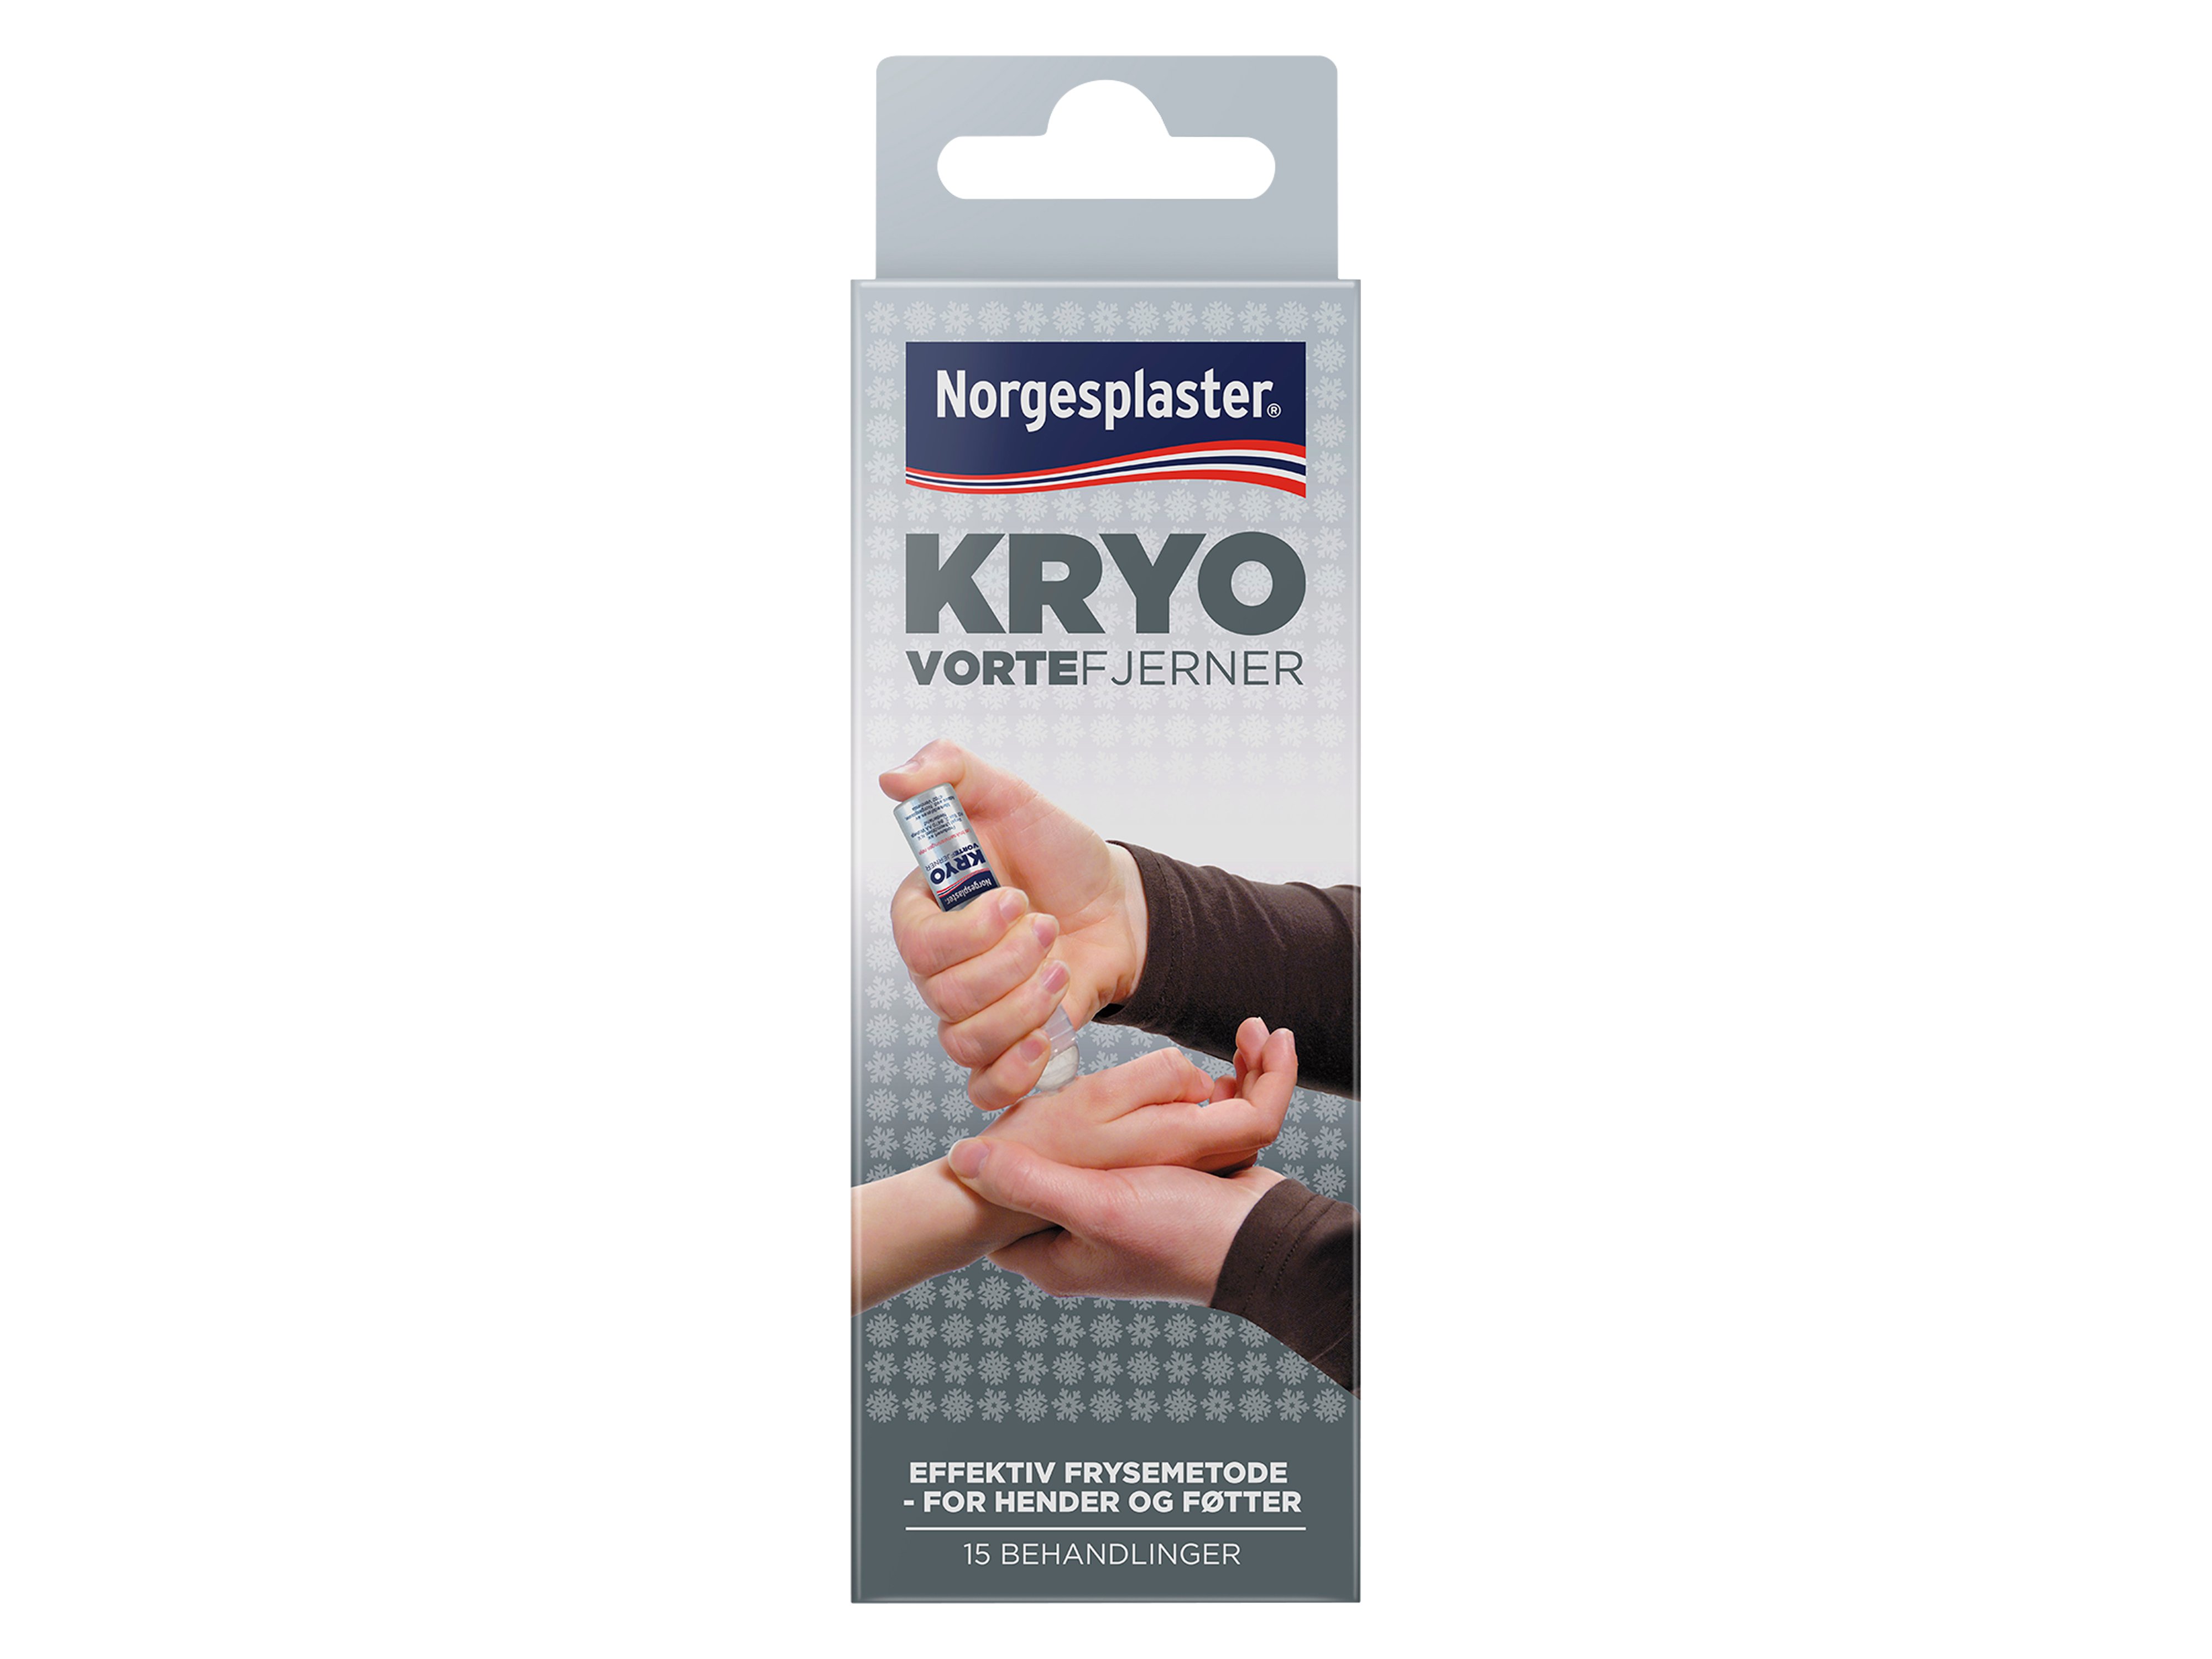 Norgesplaster Kryo vortefjerner, 38 ml